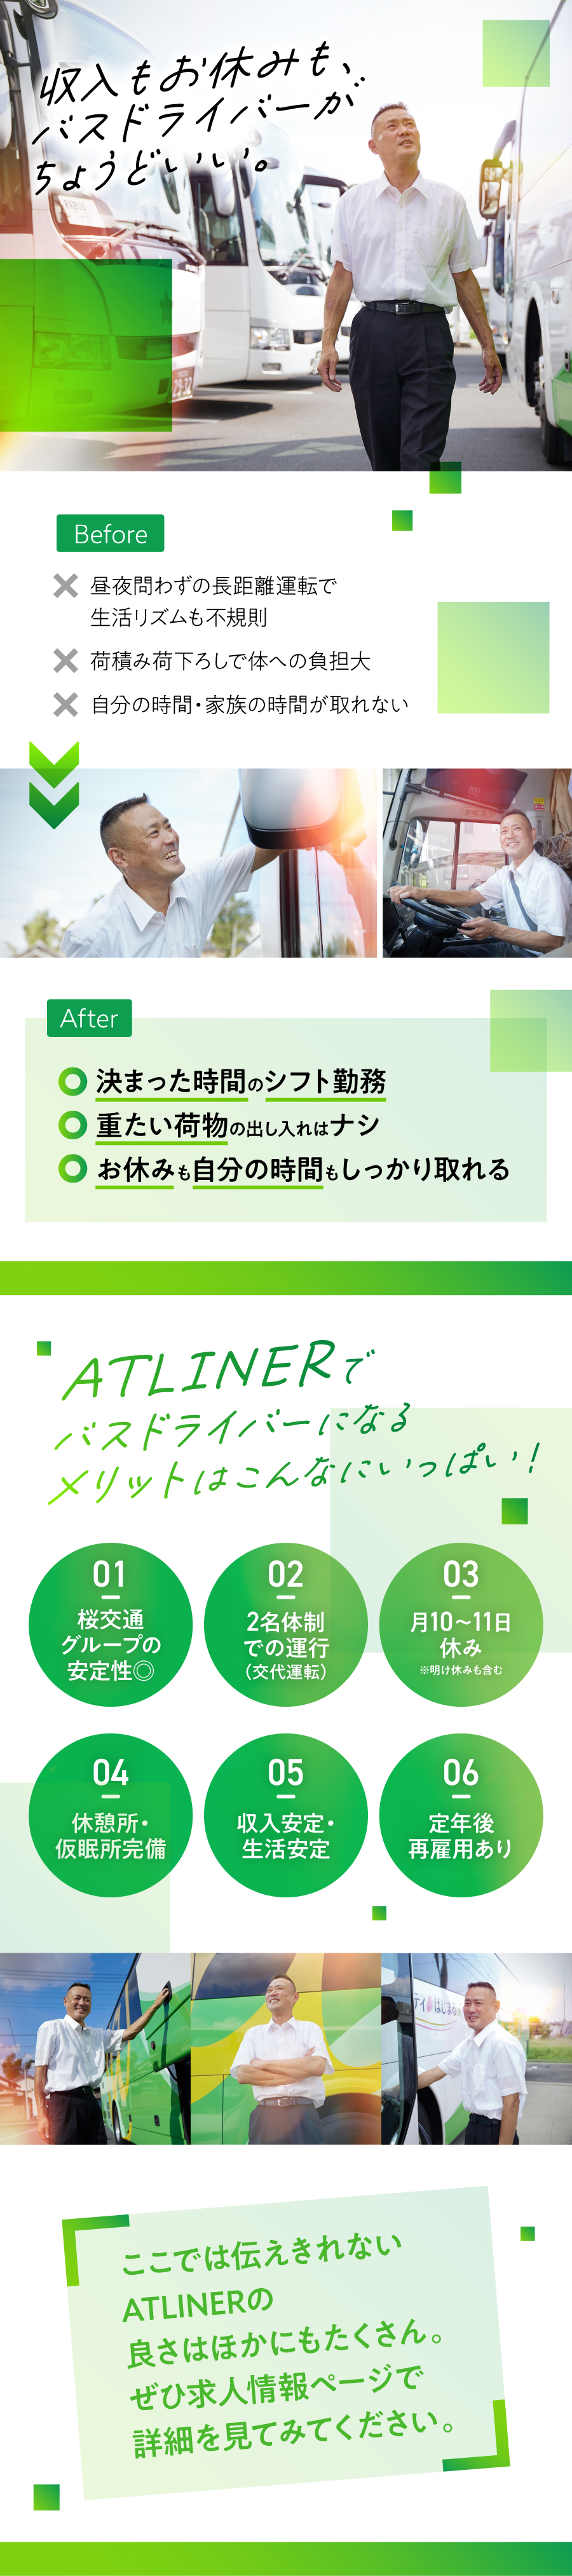 株式会社ATLINERからのメッセージ